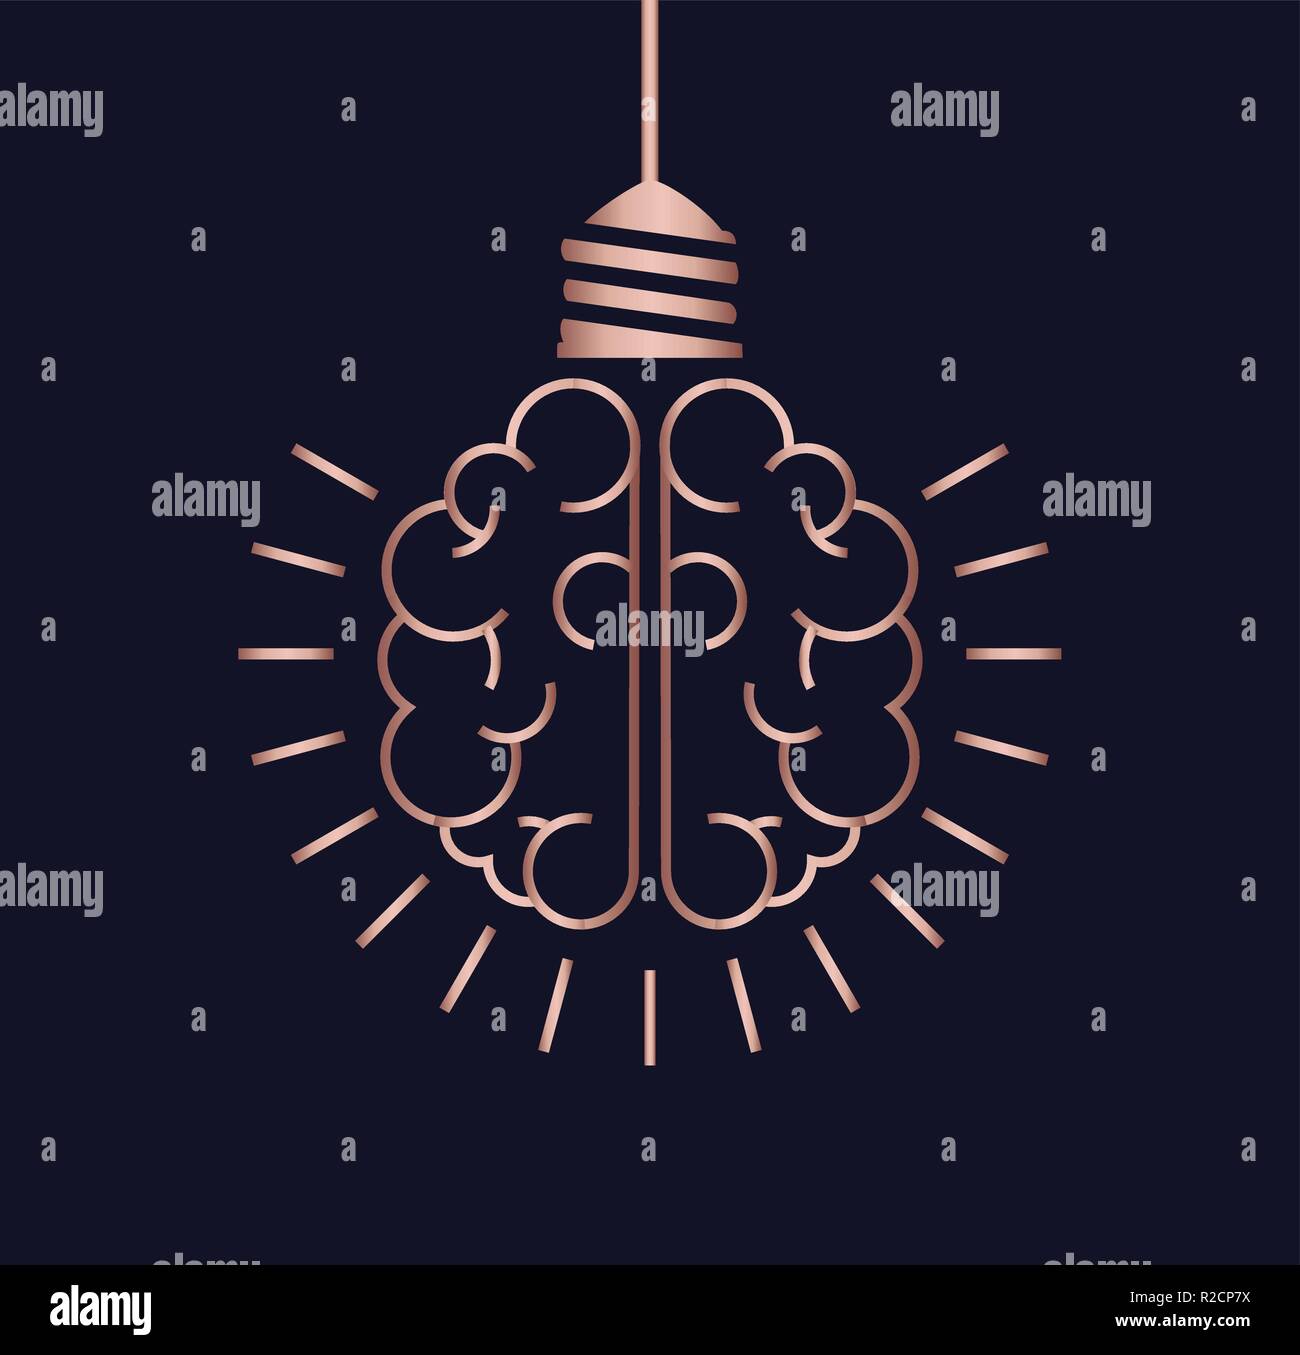 Le idee brillanti semplice concetto design, lusso color rame cervello umano come lampadina luce nel pulire la linea moderna stile d'arte. Illustrazione Vettoriale